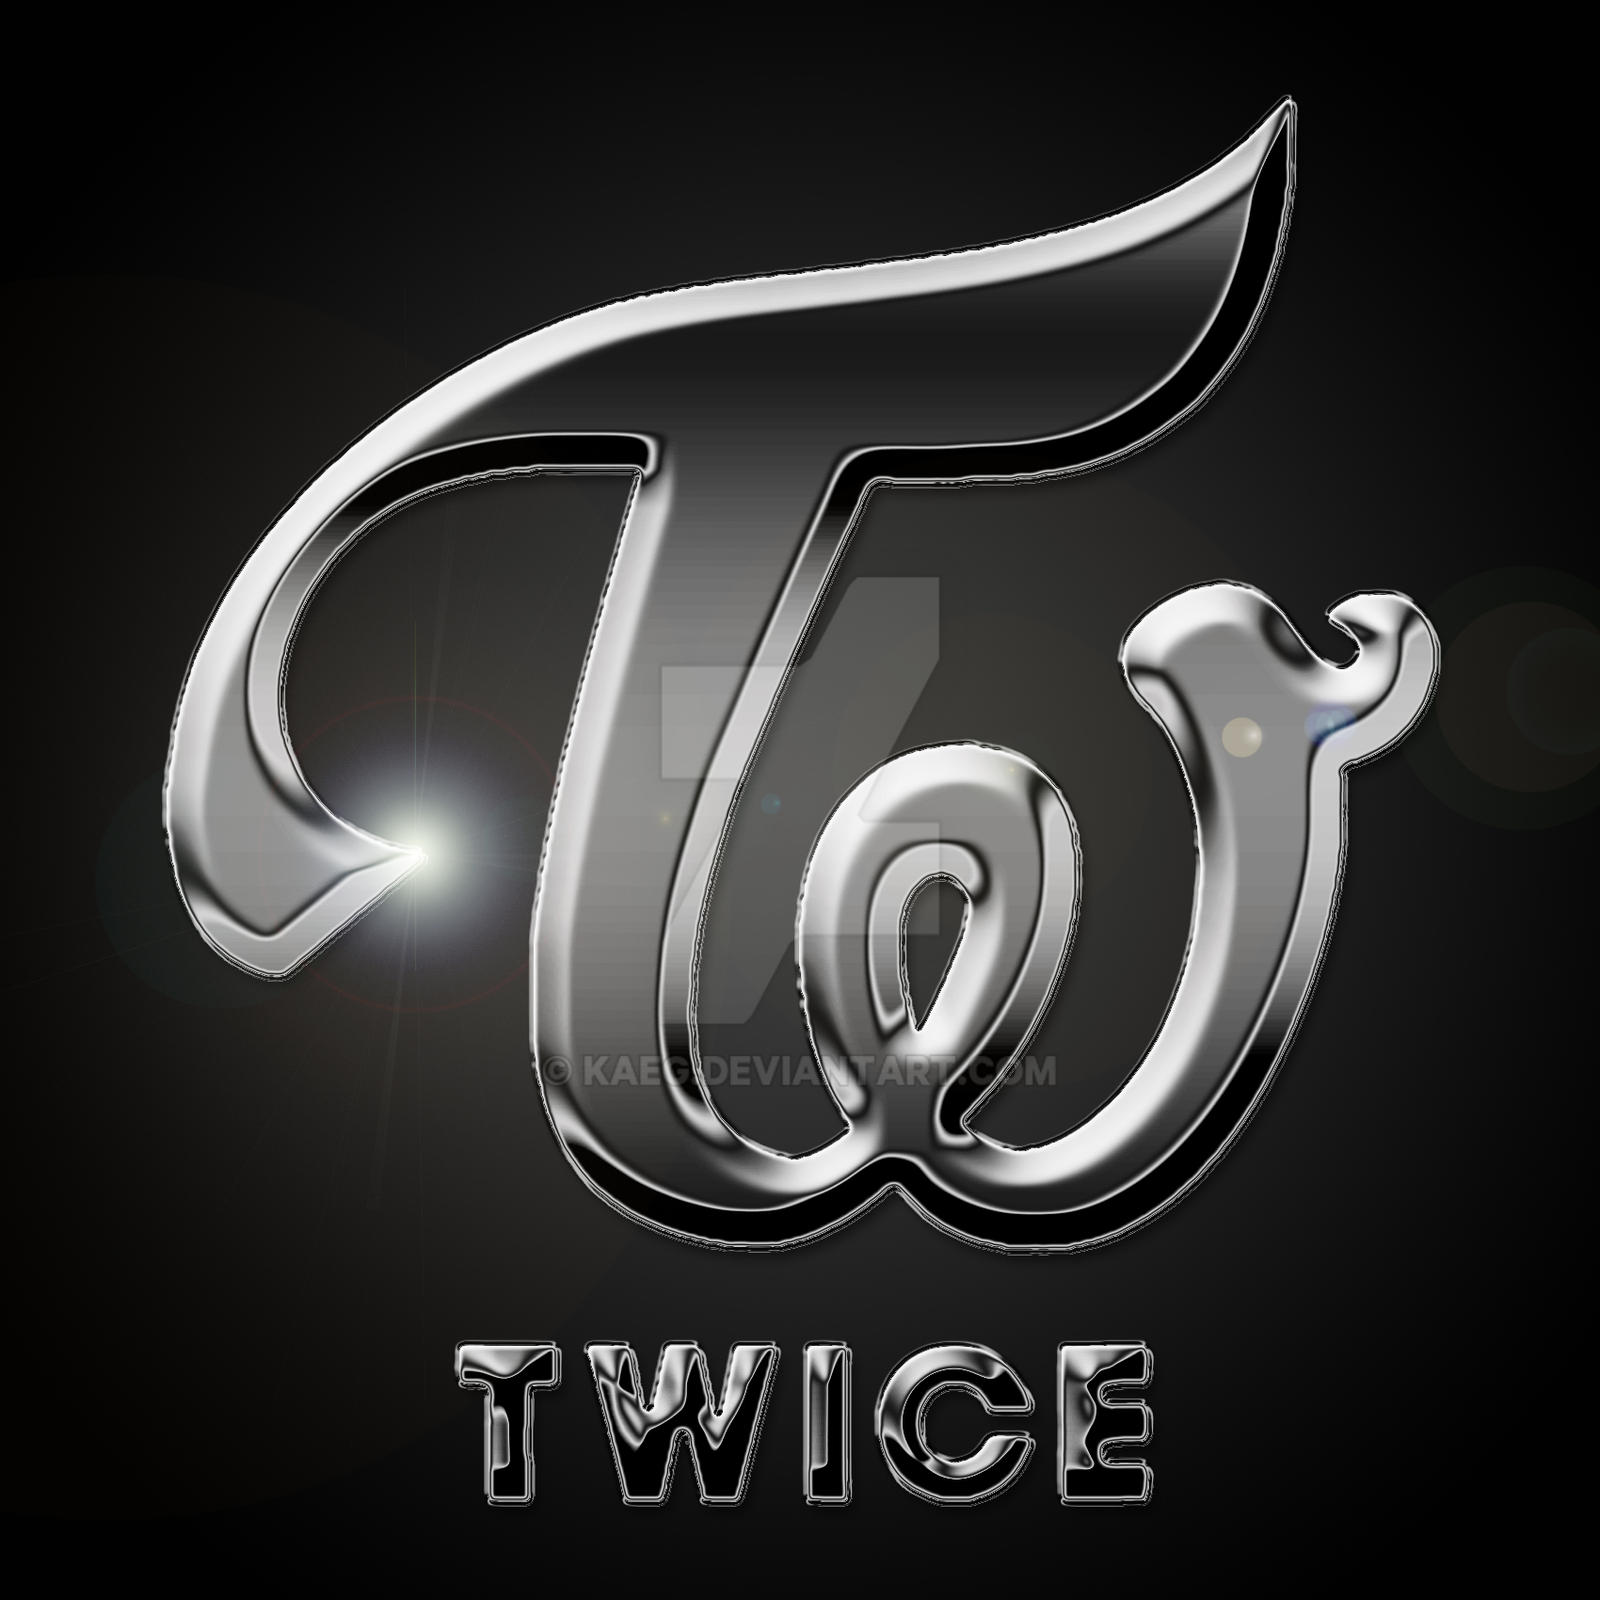 TWICE logo wallpaper Chrome Theme - ThemeBeta